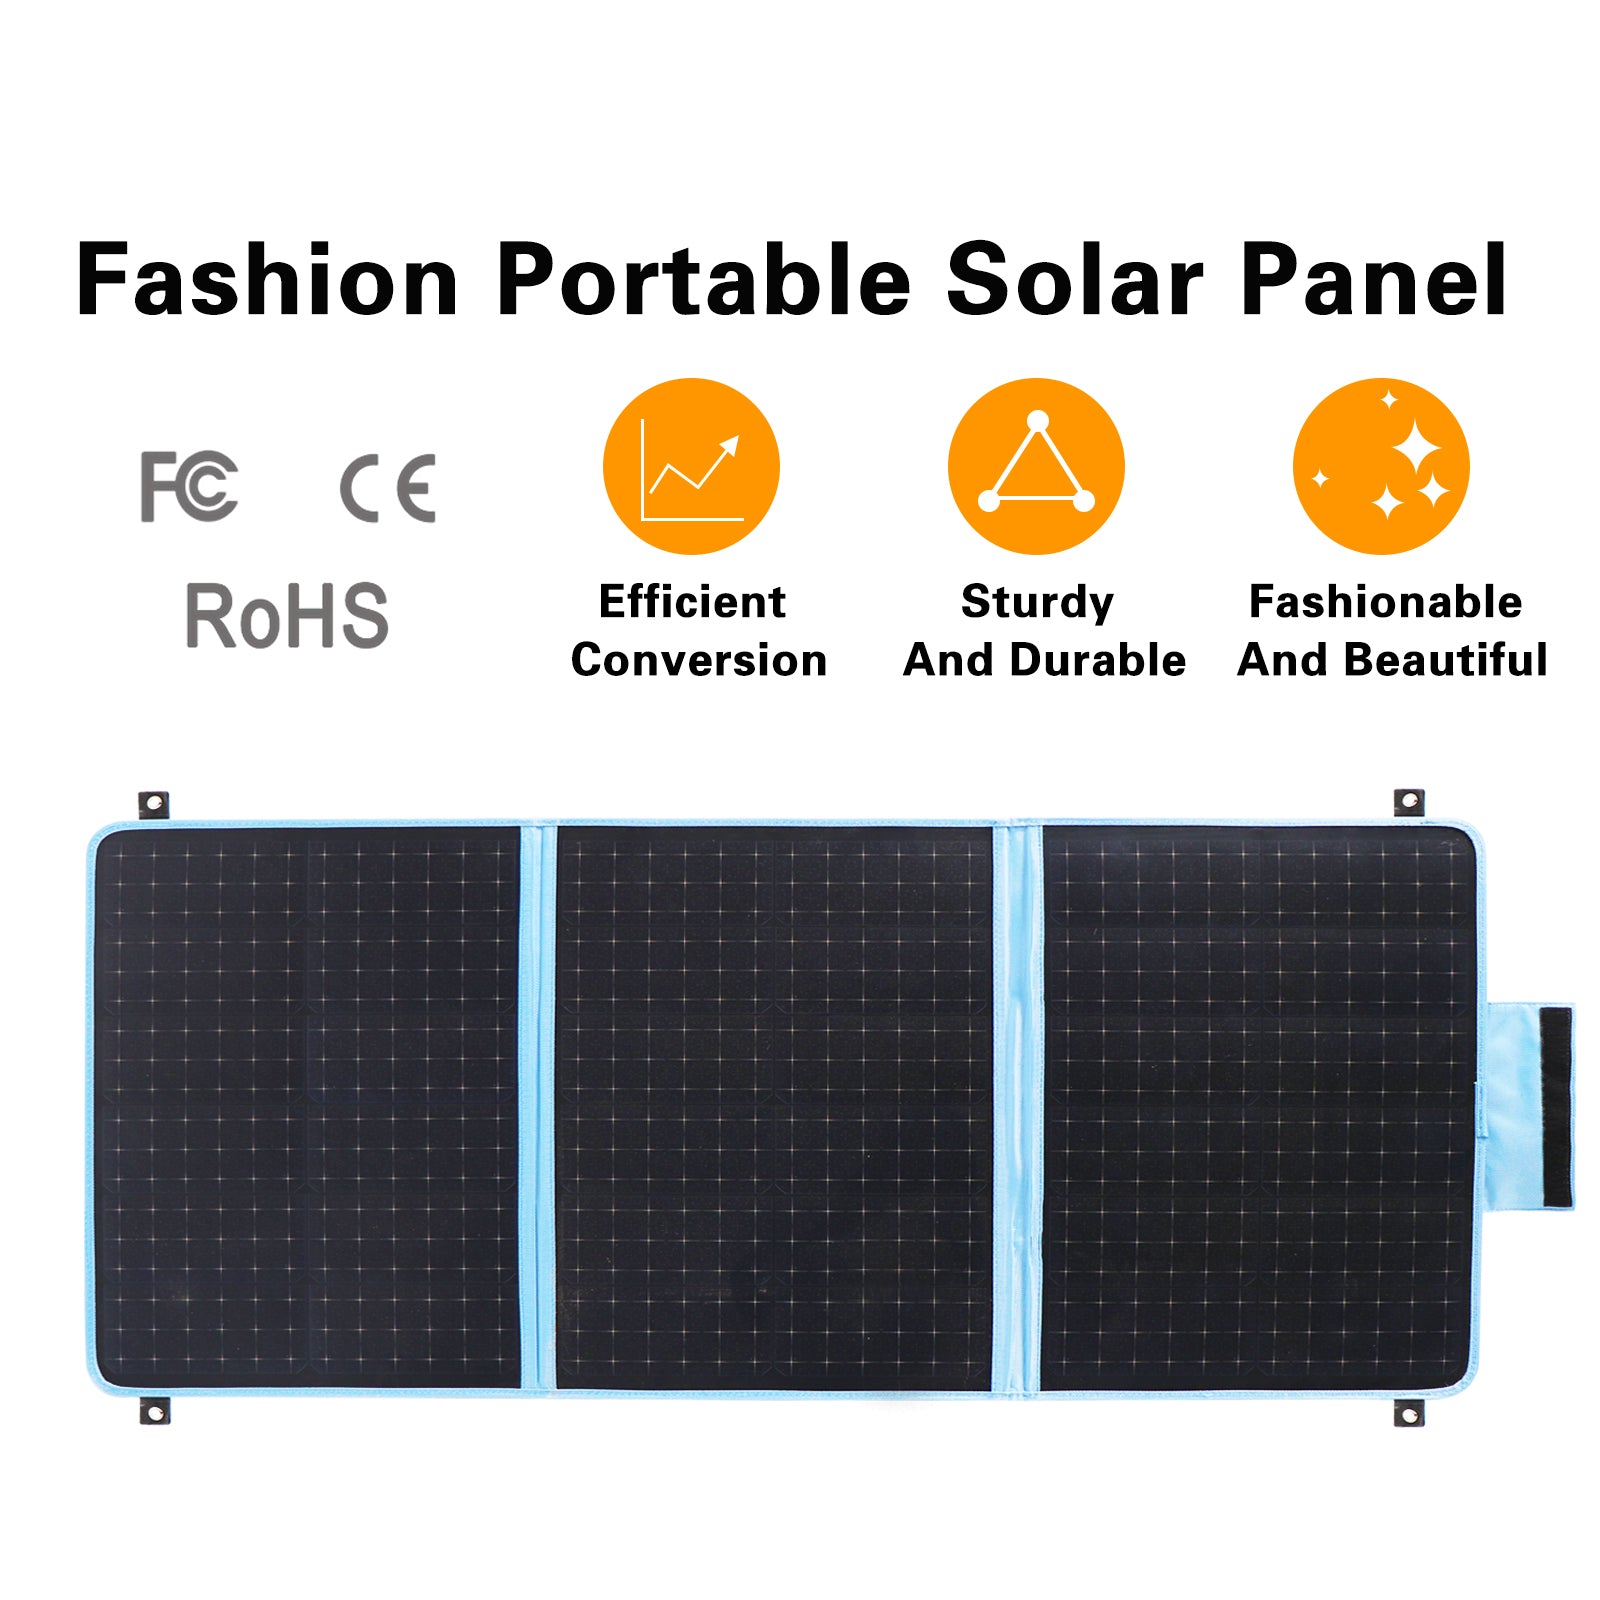 Shawllar 100W Fashion Portable Solar Panel